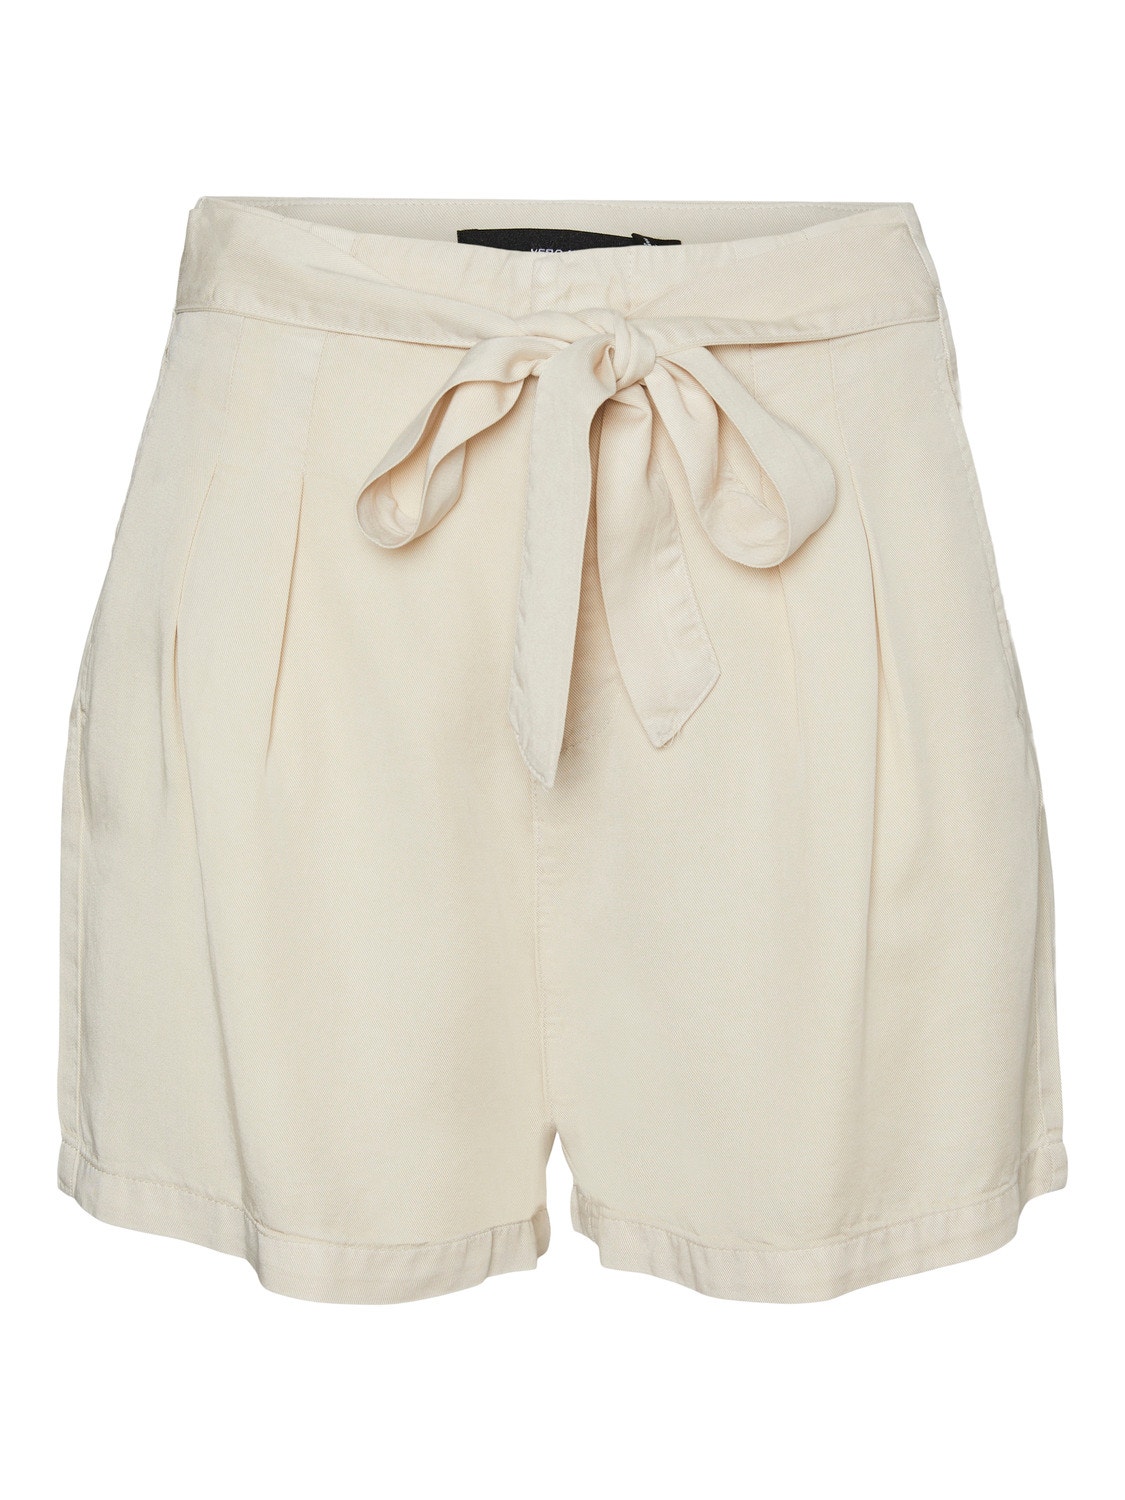 Vero Moda VMMIA Shorts -Oatmeal - 10209543